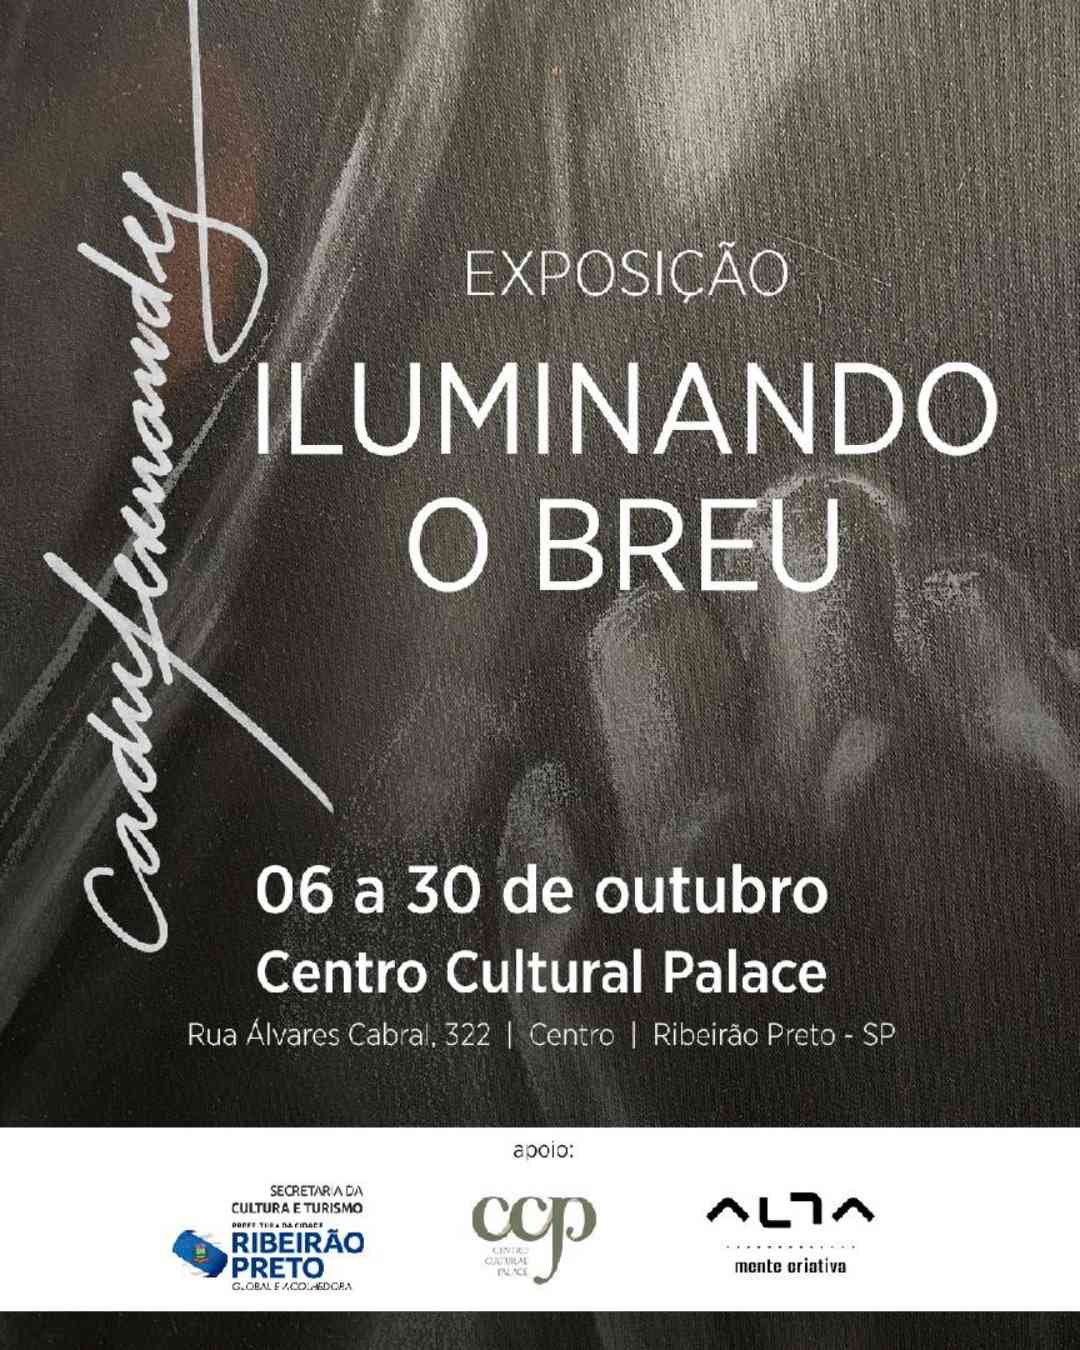 Exposição "Iluminando o Breu" apresenta obras de Cadu Fernandes